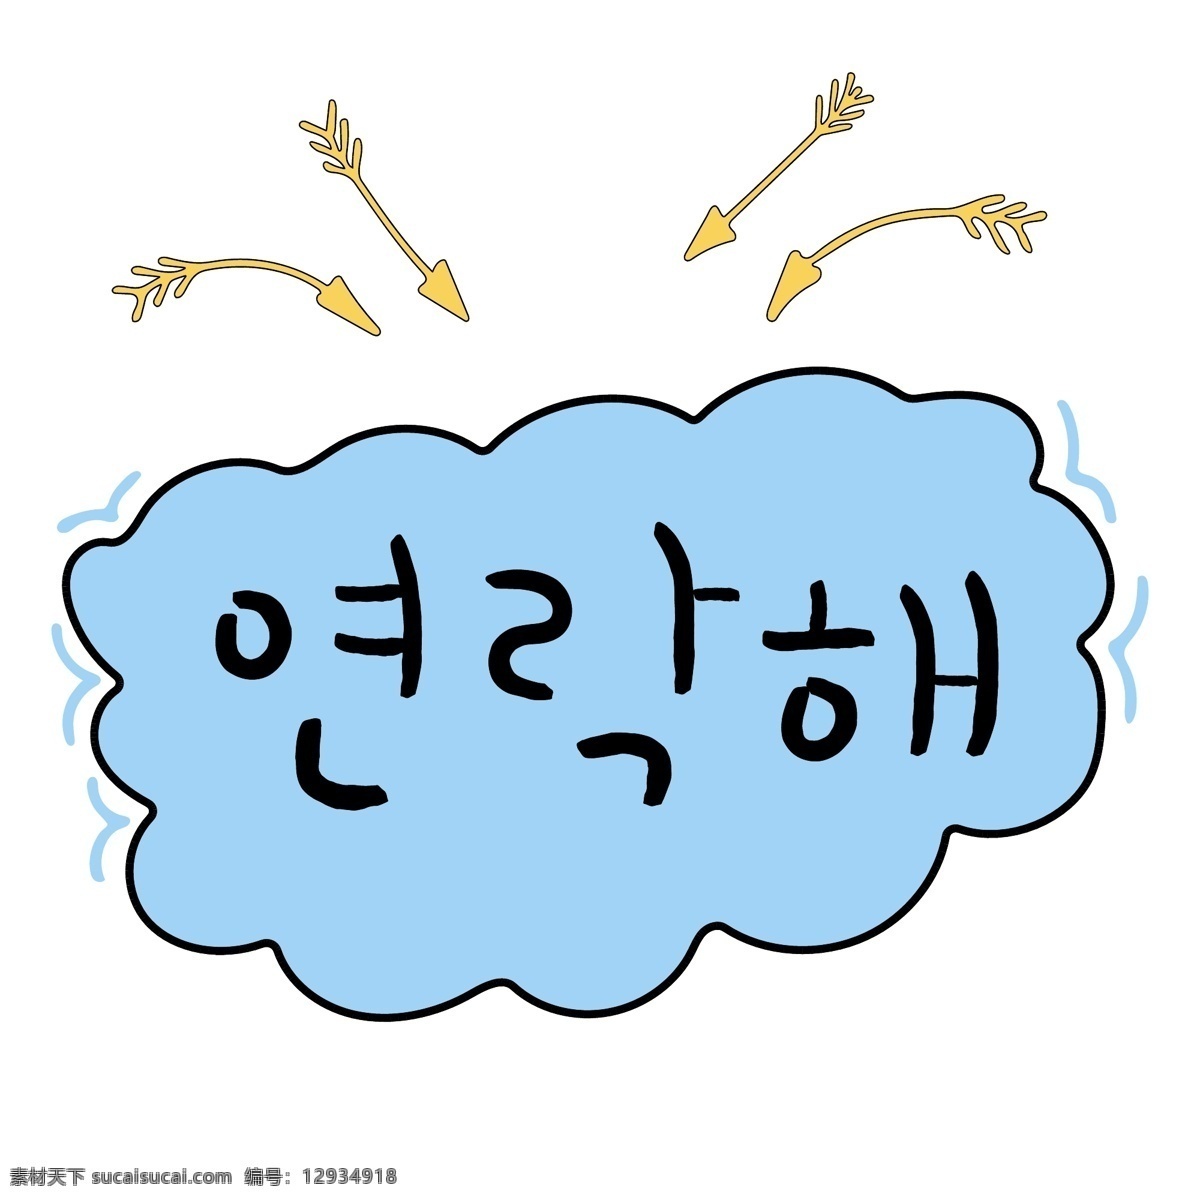 云朵 箭头 韩国 商 用语 联系 肝药 云 名黄色 对话 漫画 马风线 小的 向量 联系吧 日常用语 卡通 蓝色